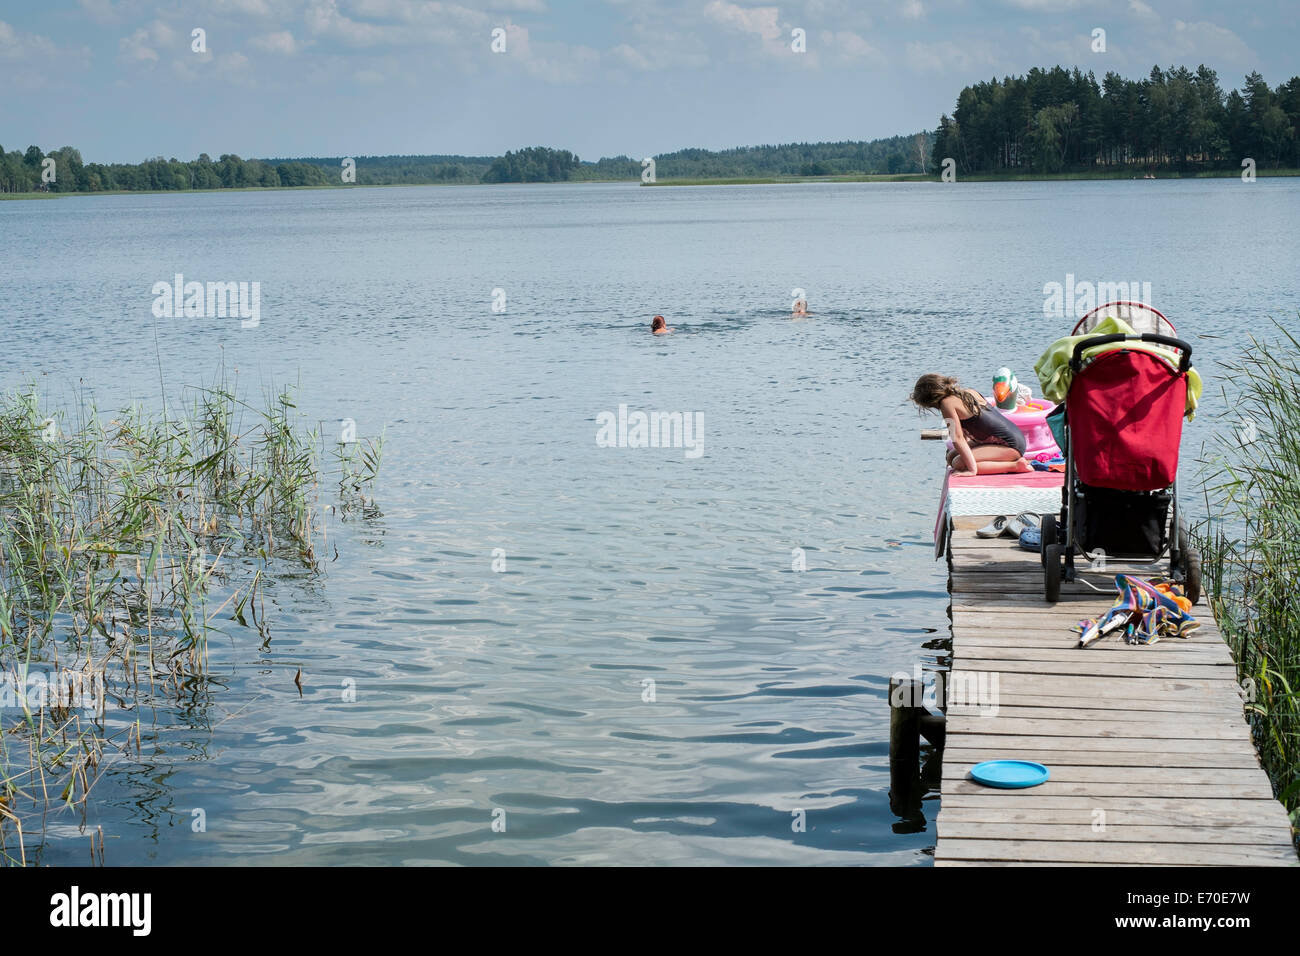 Familie genießen ein erfrischendes Bad, Zelwa See Giby, Polen Stockfoto